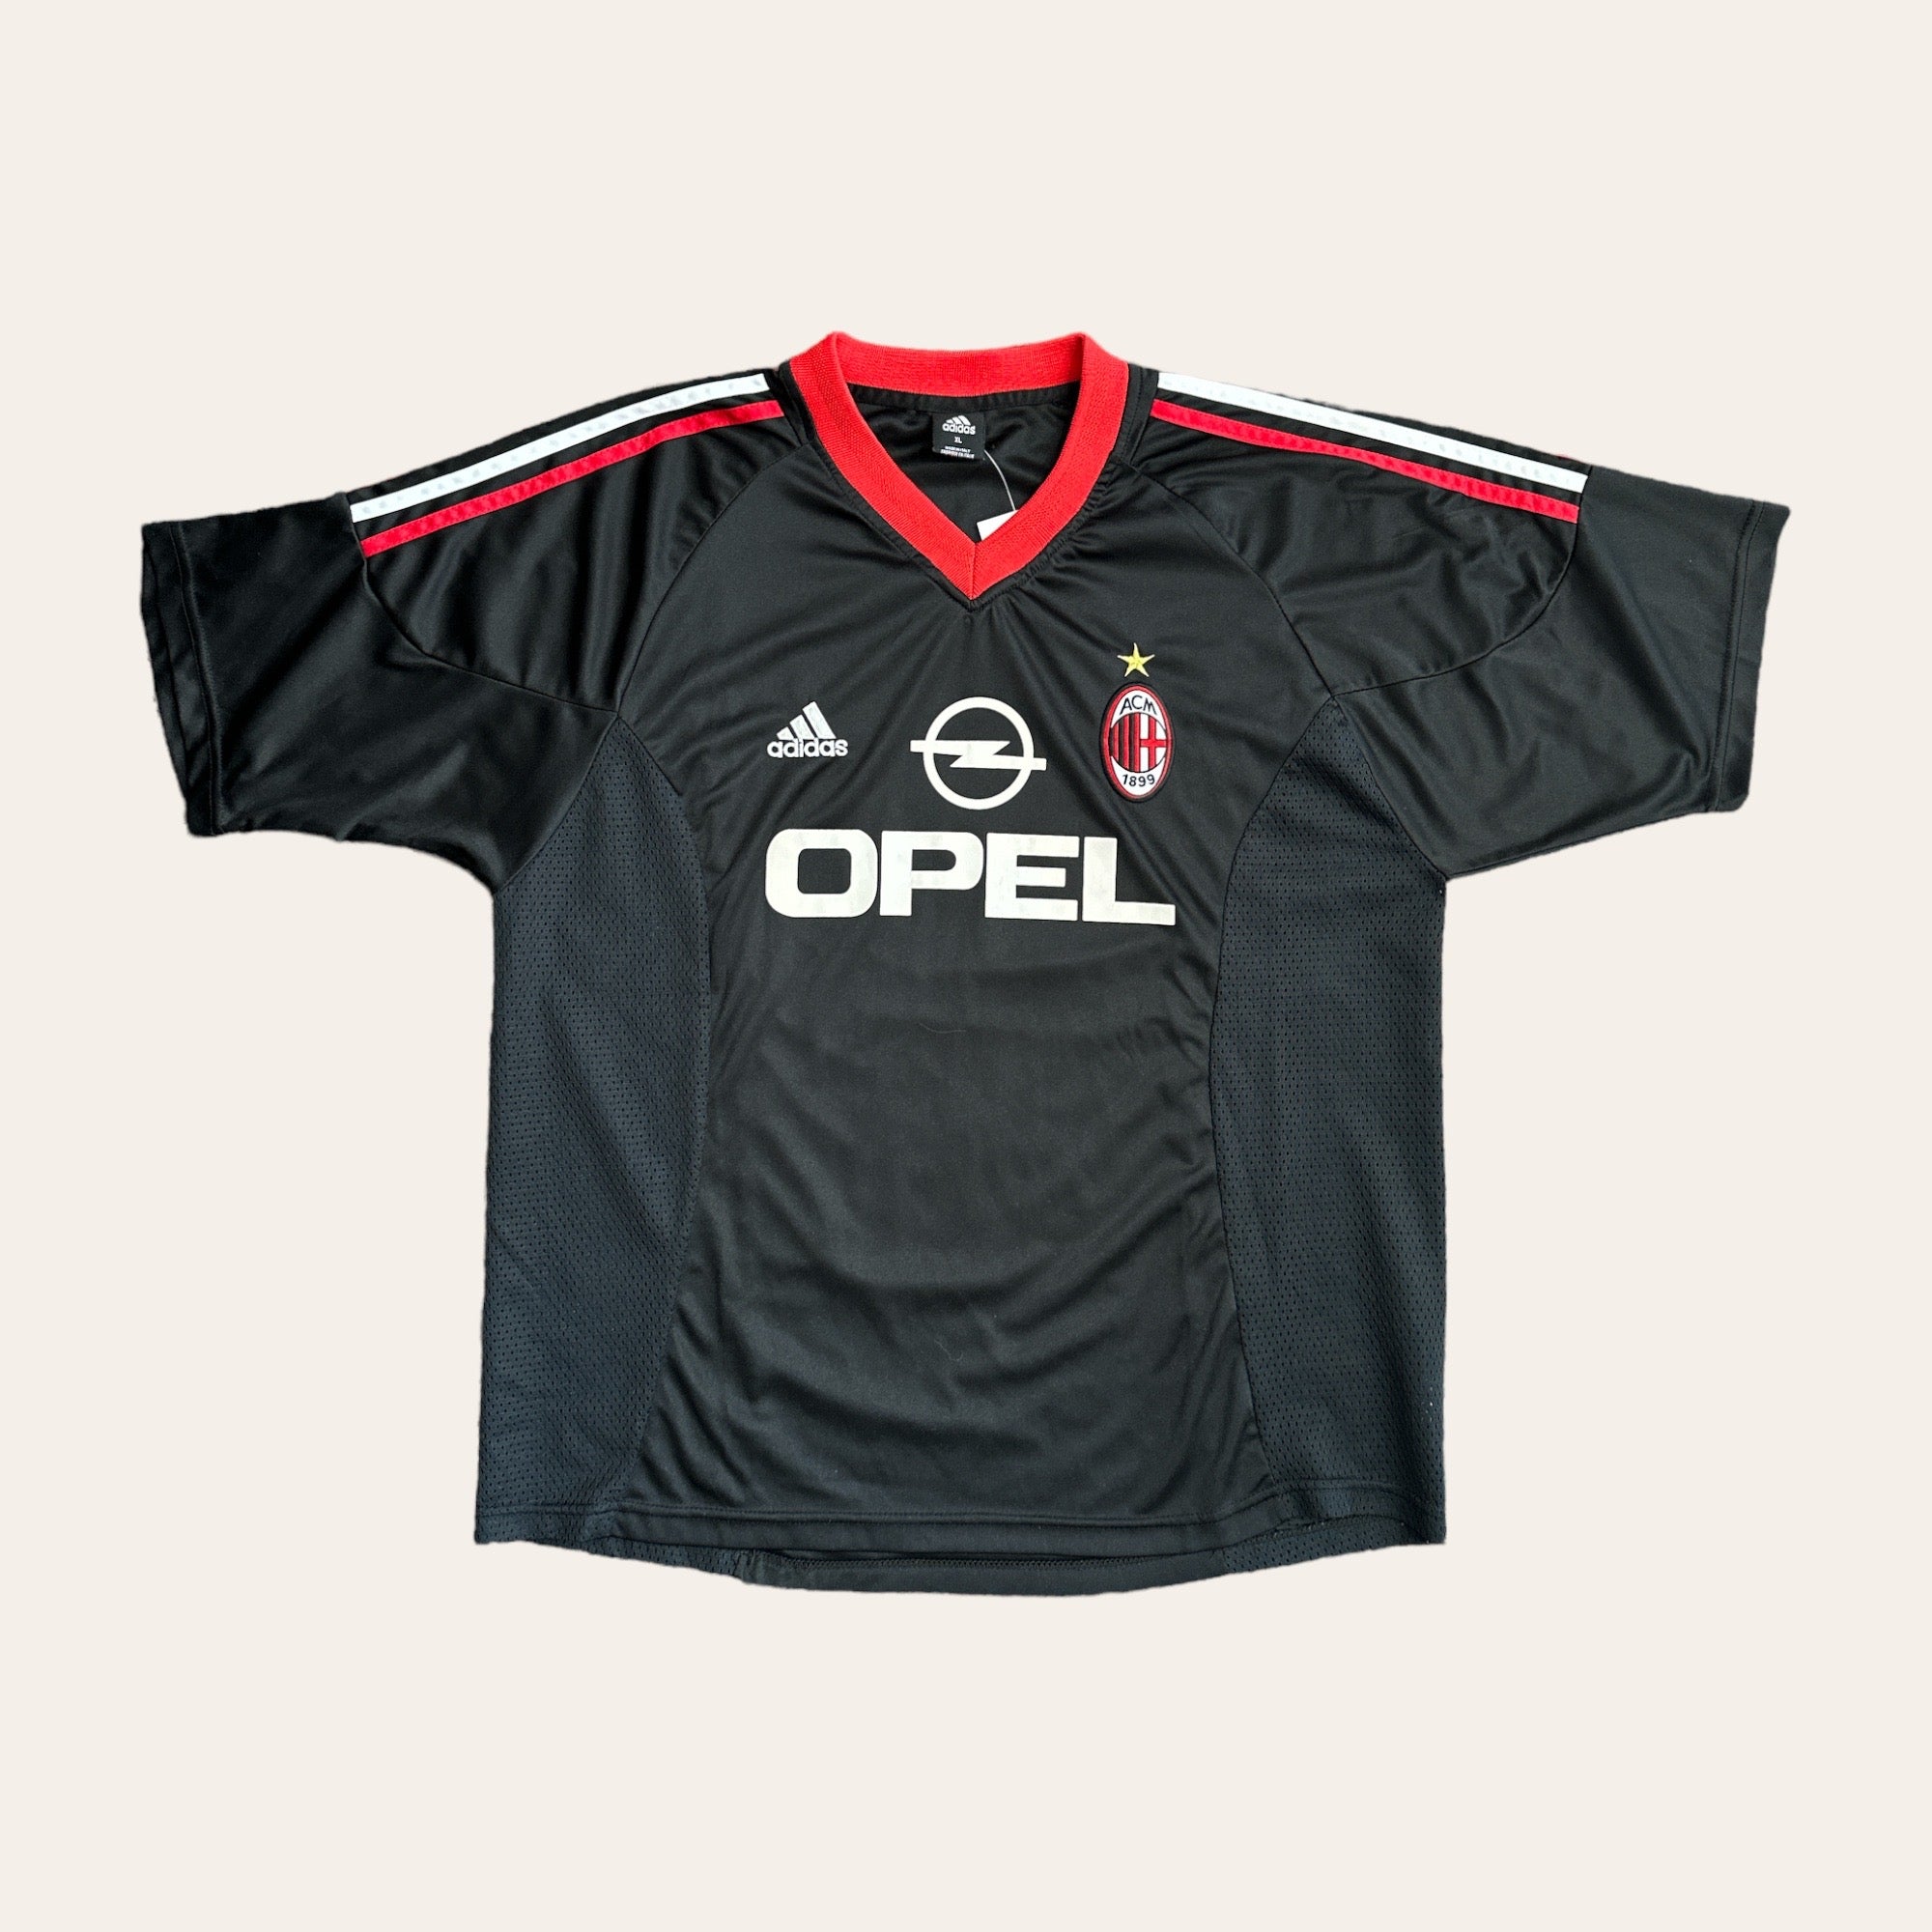 02/03 AC Milan Third Kit Size XL